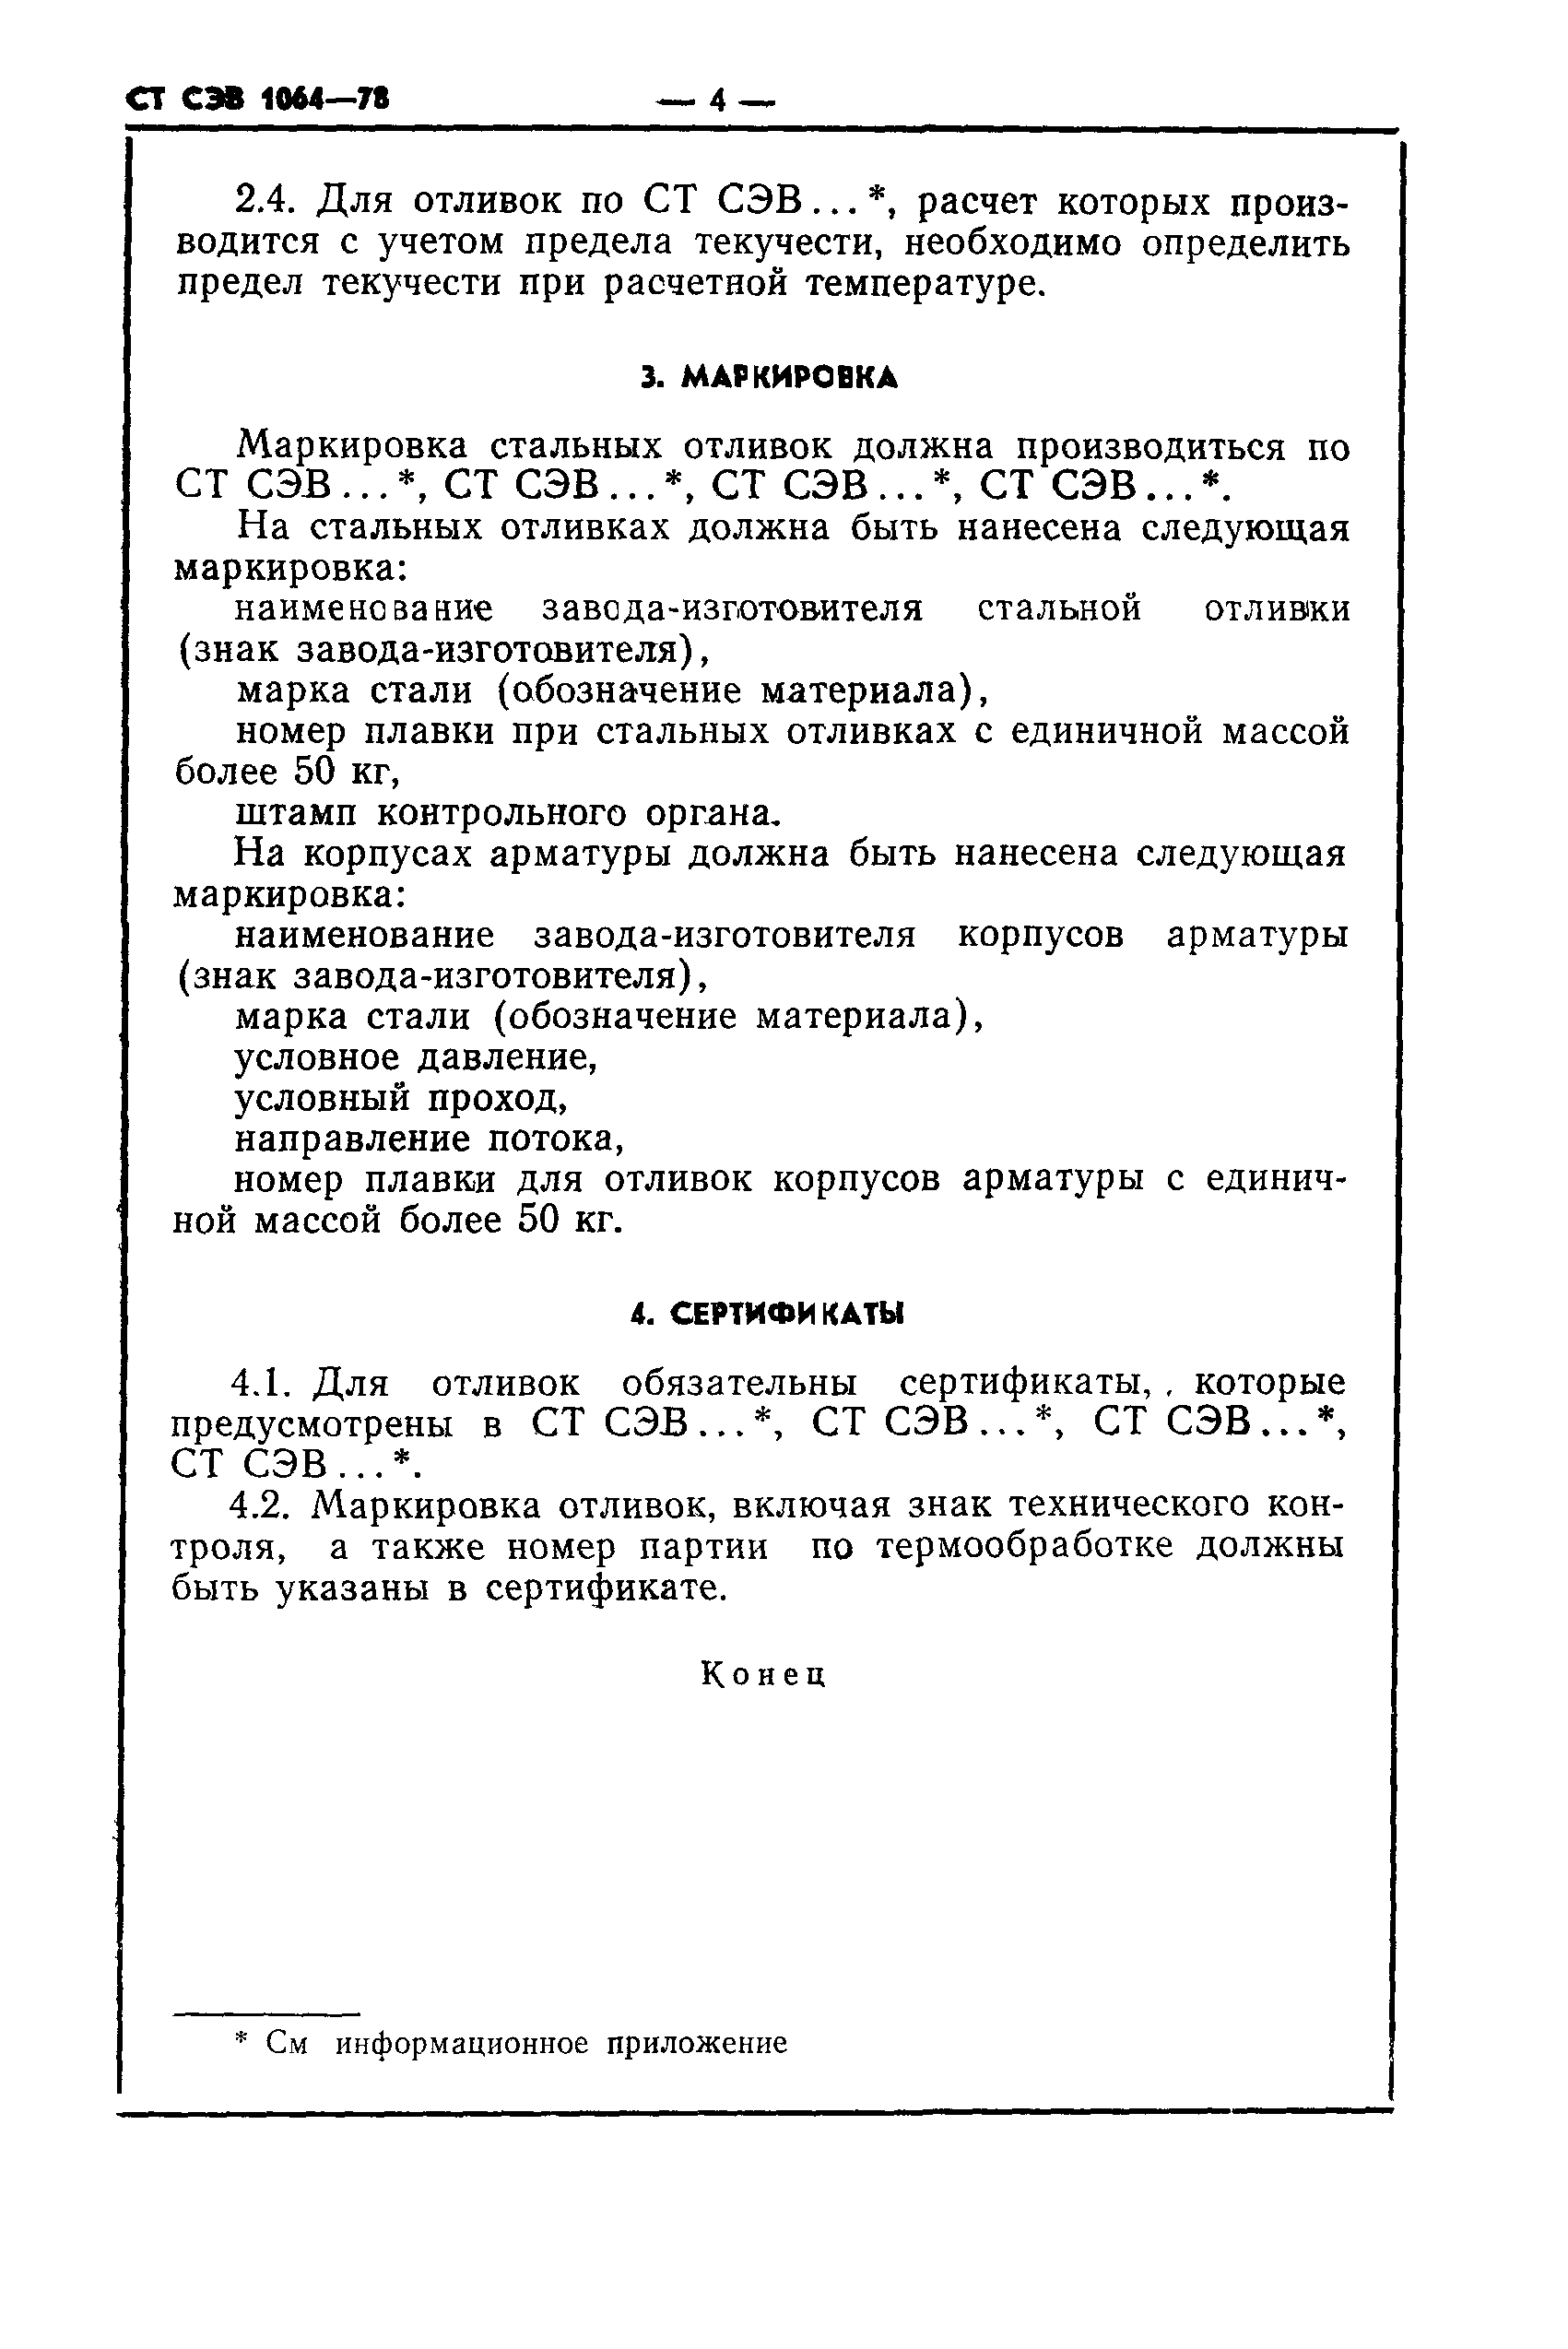 СТ СЭВ 1064-78